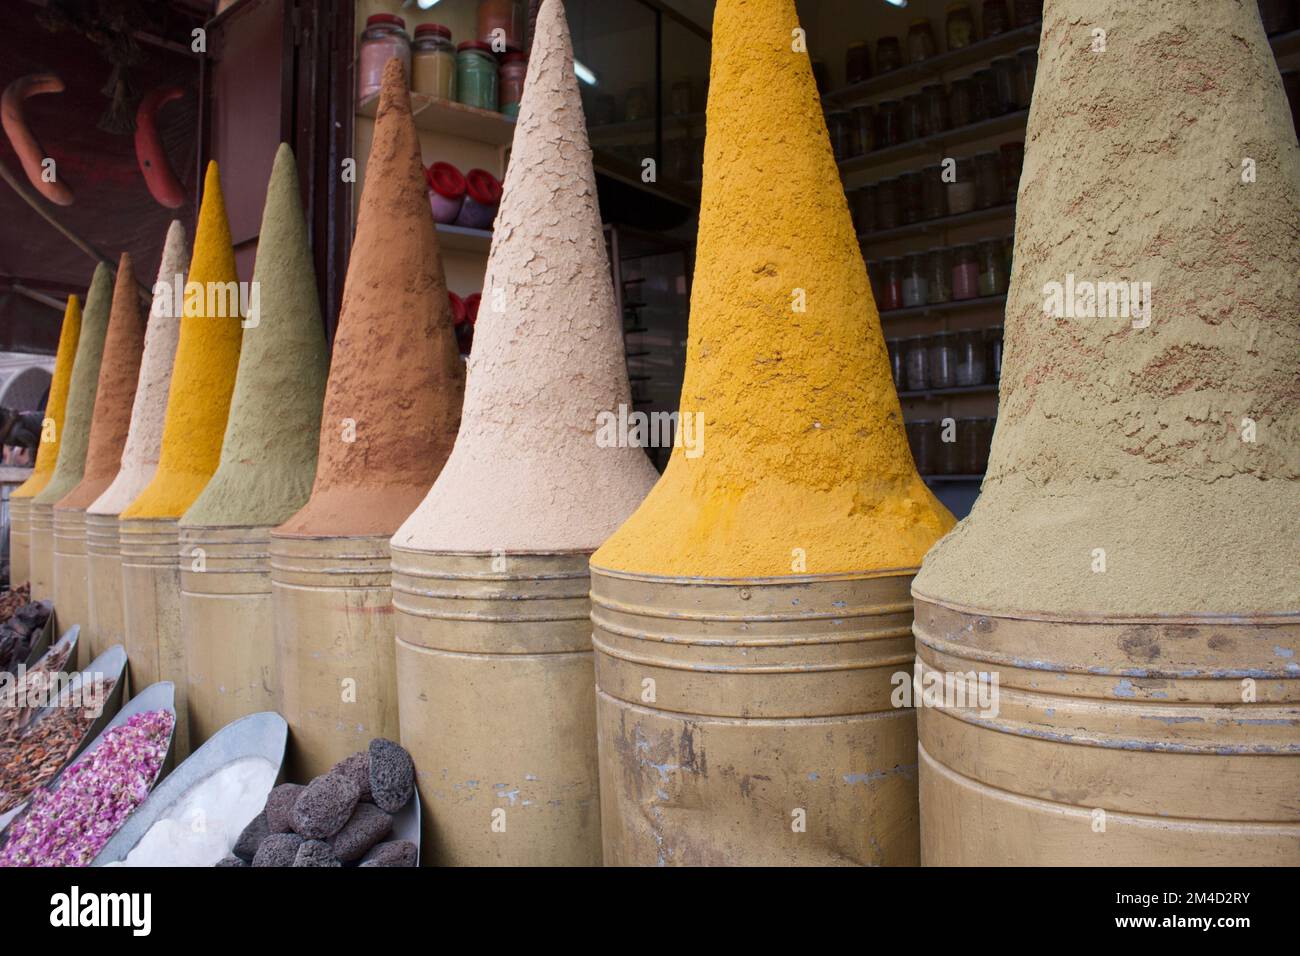 Spices Marrakech, Morocco Stock Photo